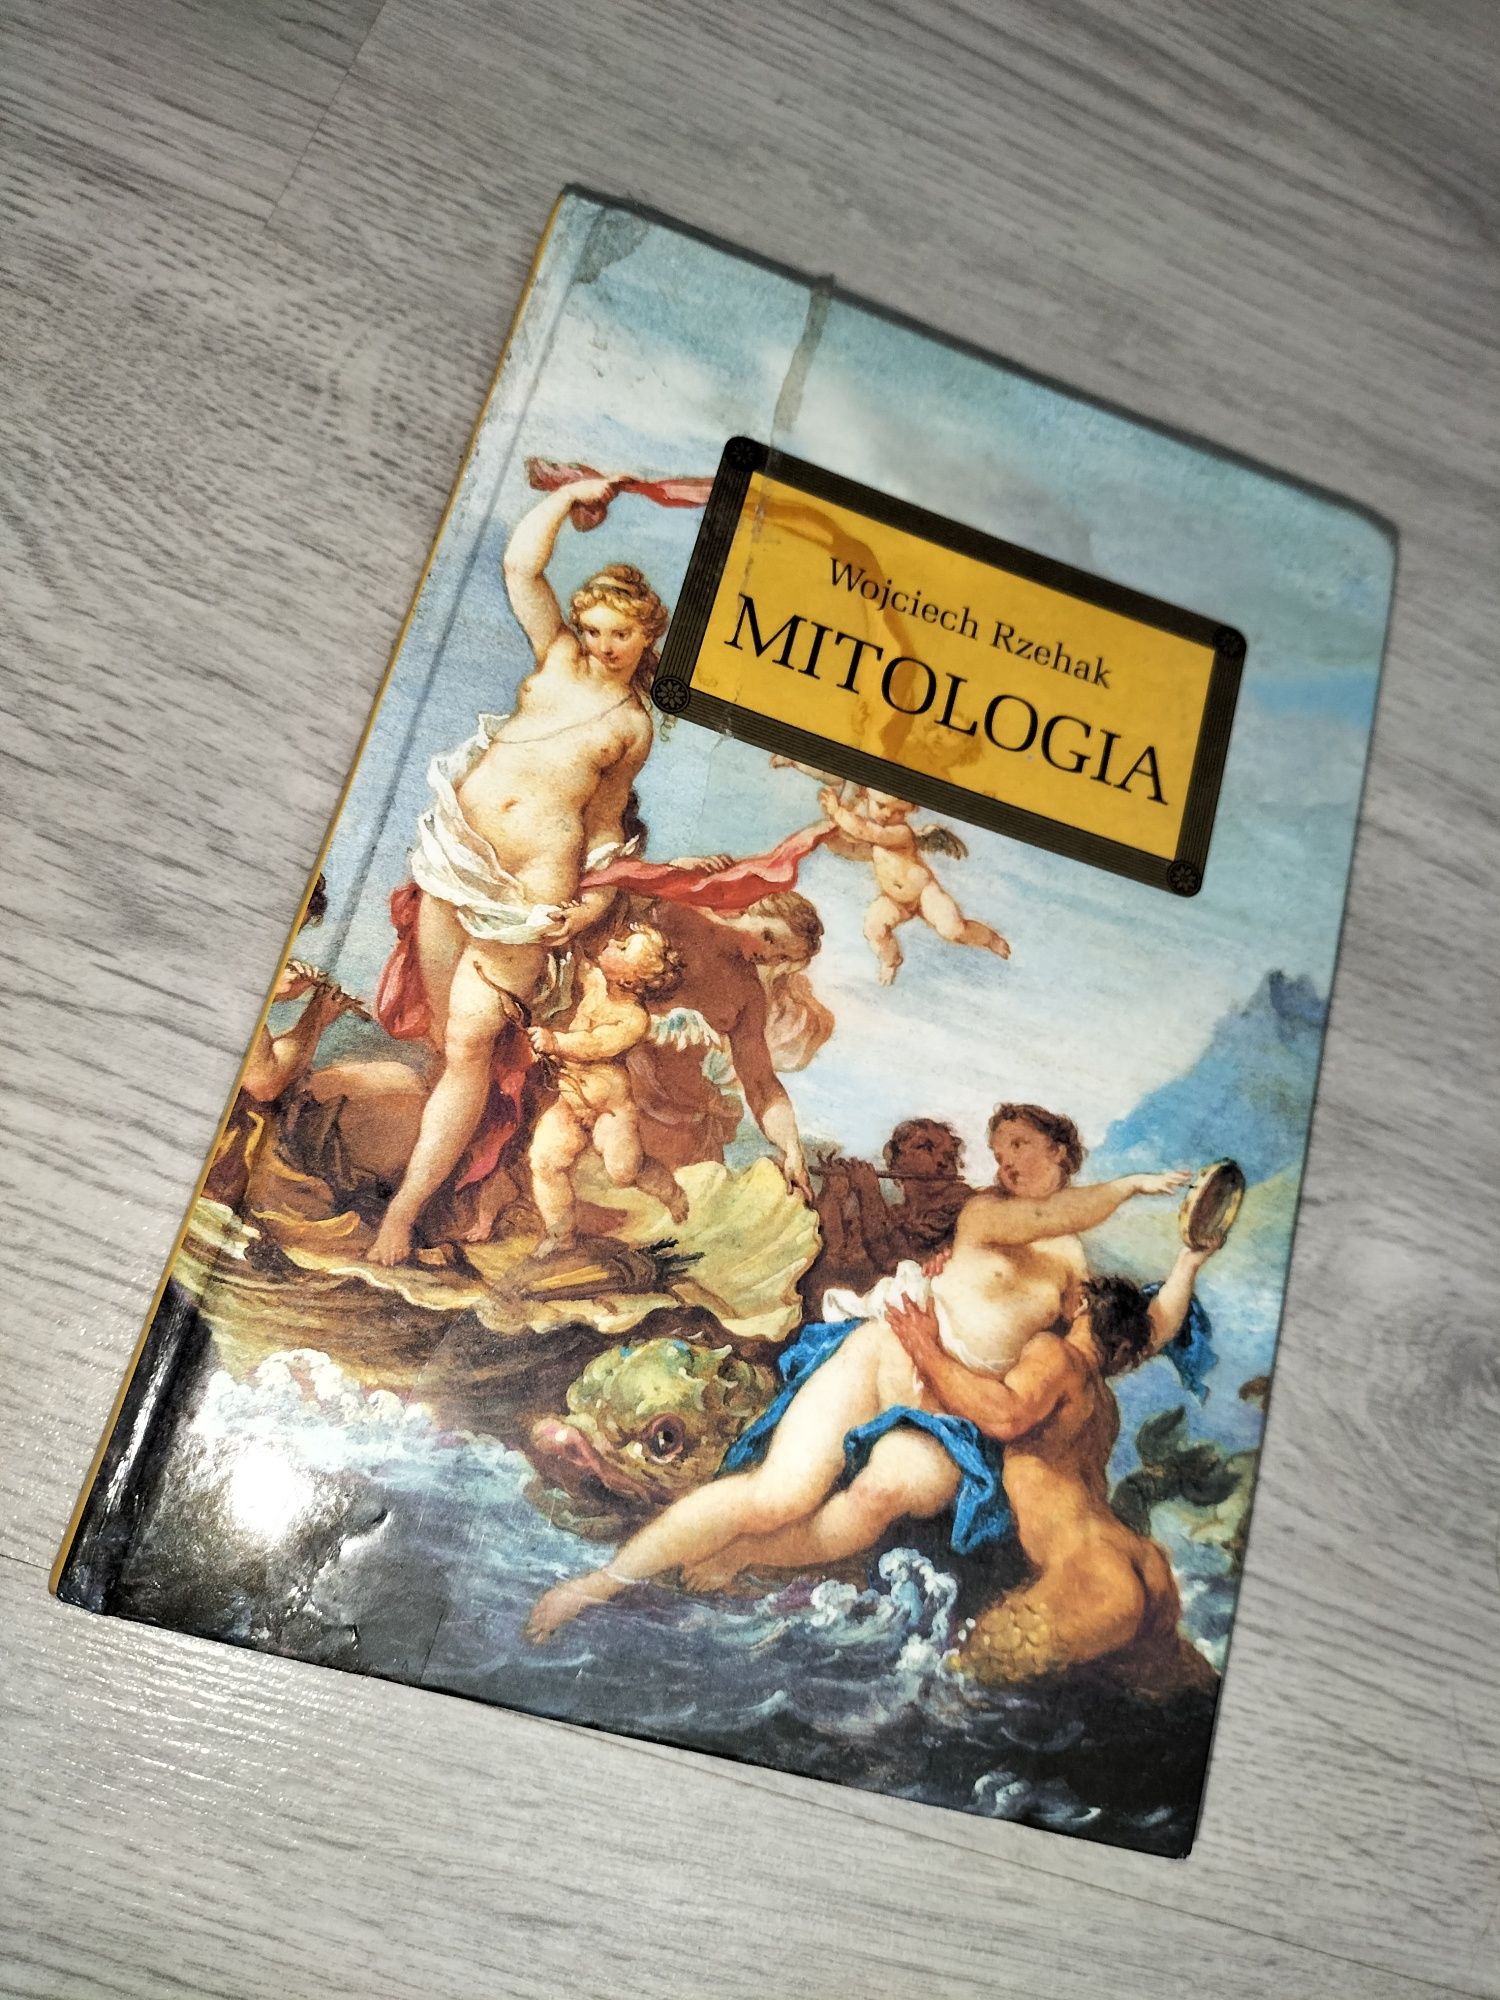 Mitologia Wojciech rzehak książka mity antyczne rzym grecja antyk